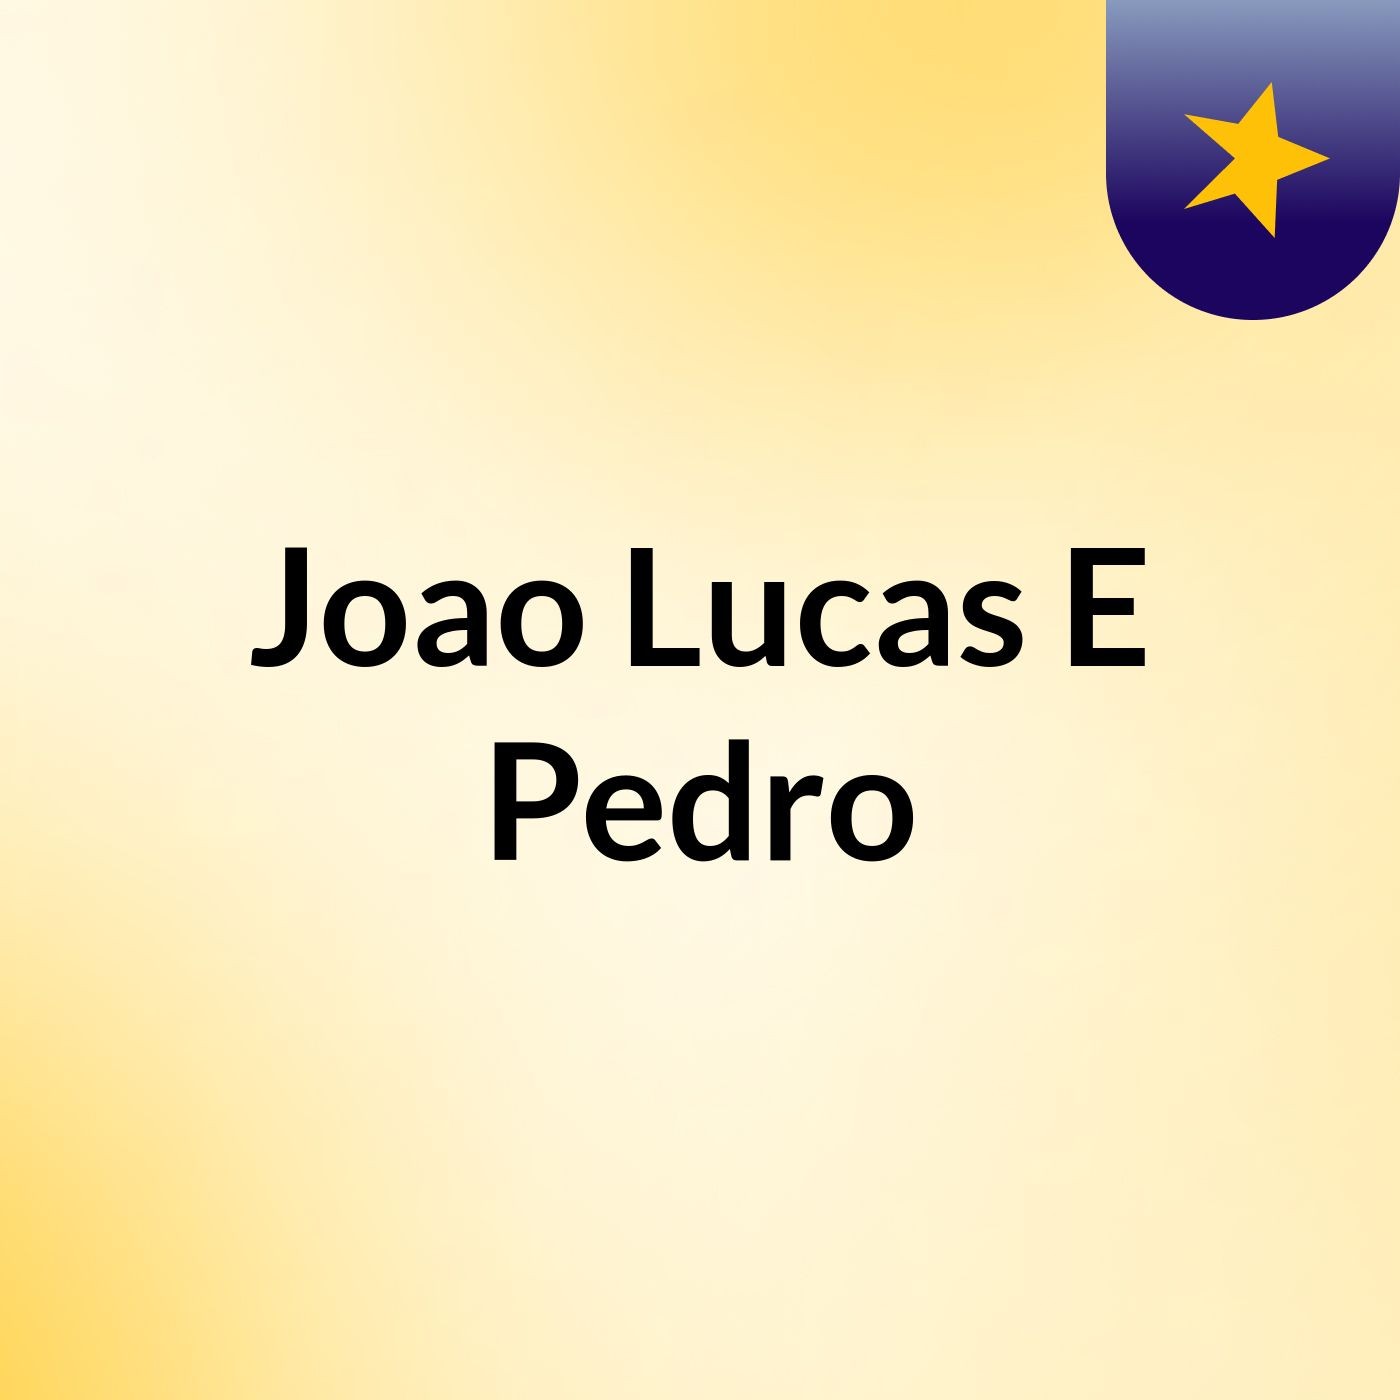 Joao Lucas E Pedro